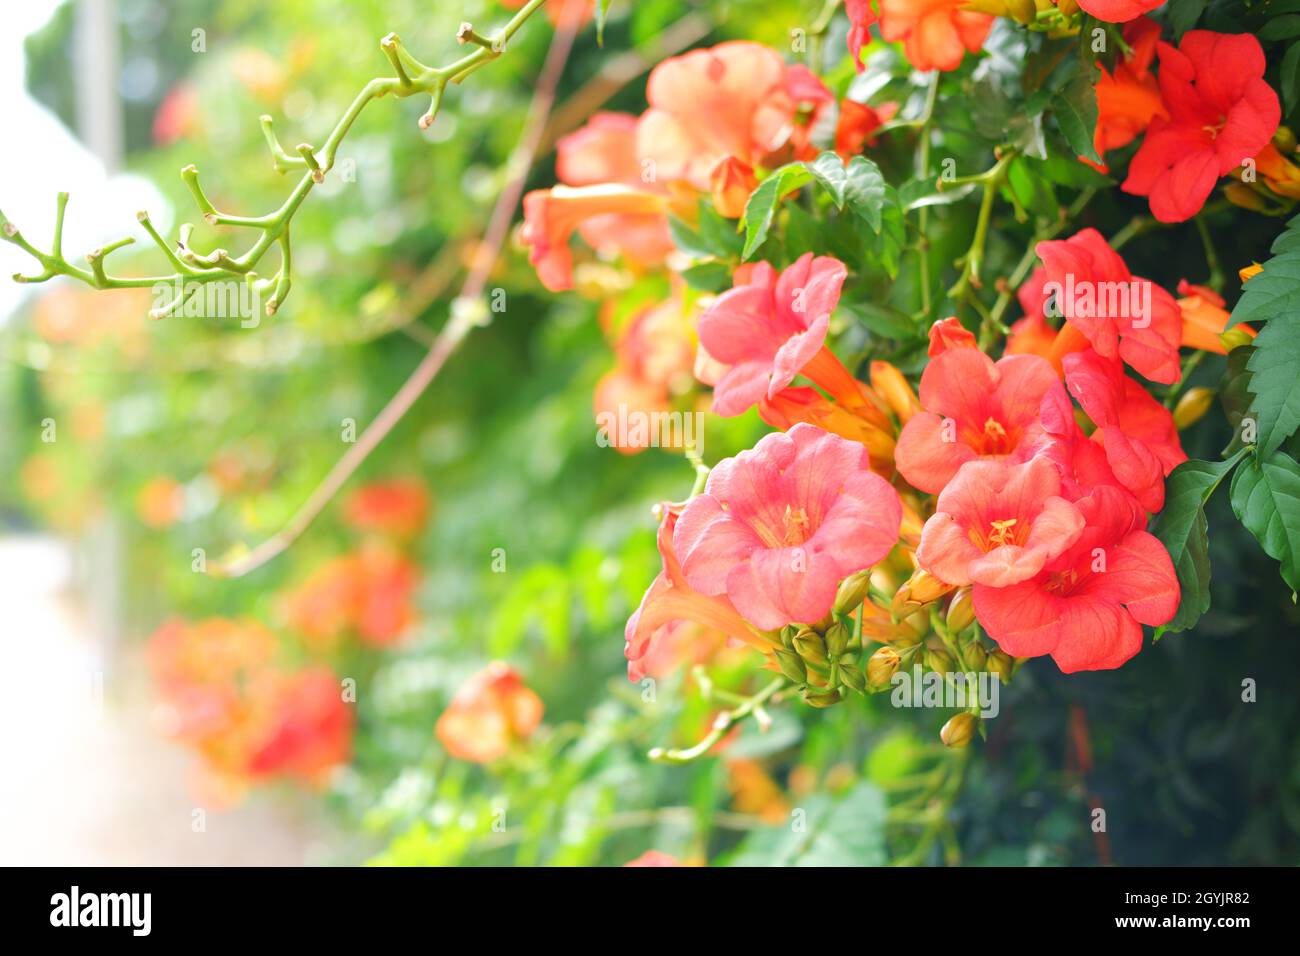 Fiore rosa della vite della tromba -radicans del campsis- sul muro in una giornata estiva soleggiata all'aperto Foto Stock